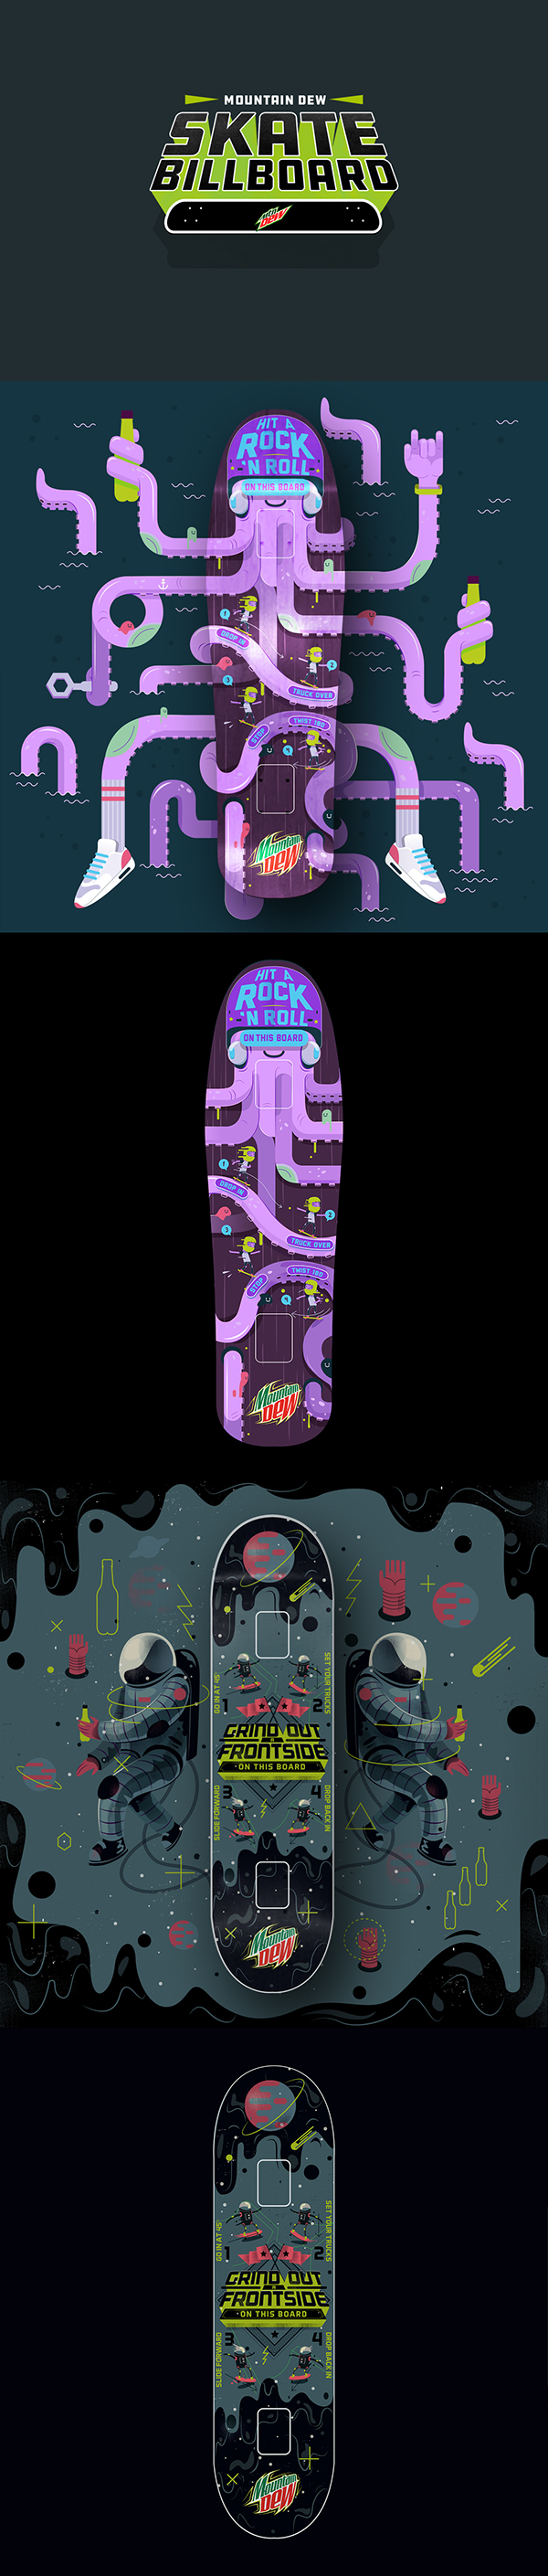 Mountain Dew: SkateBillboards